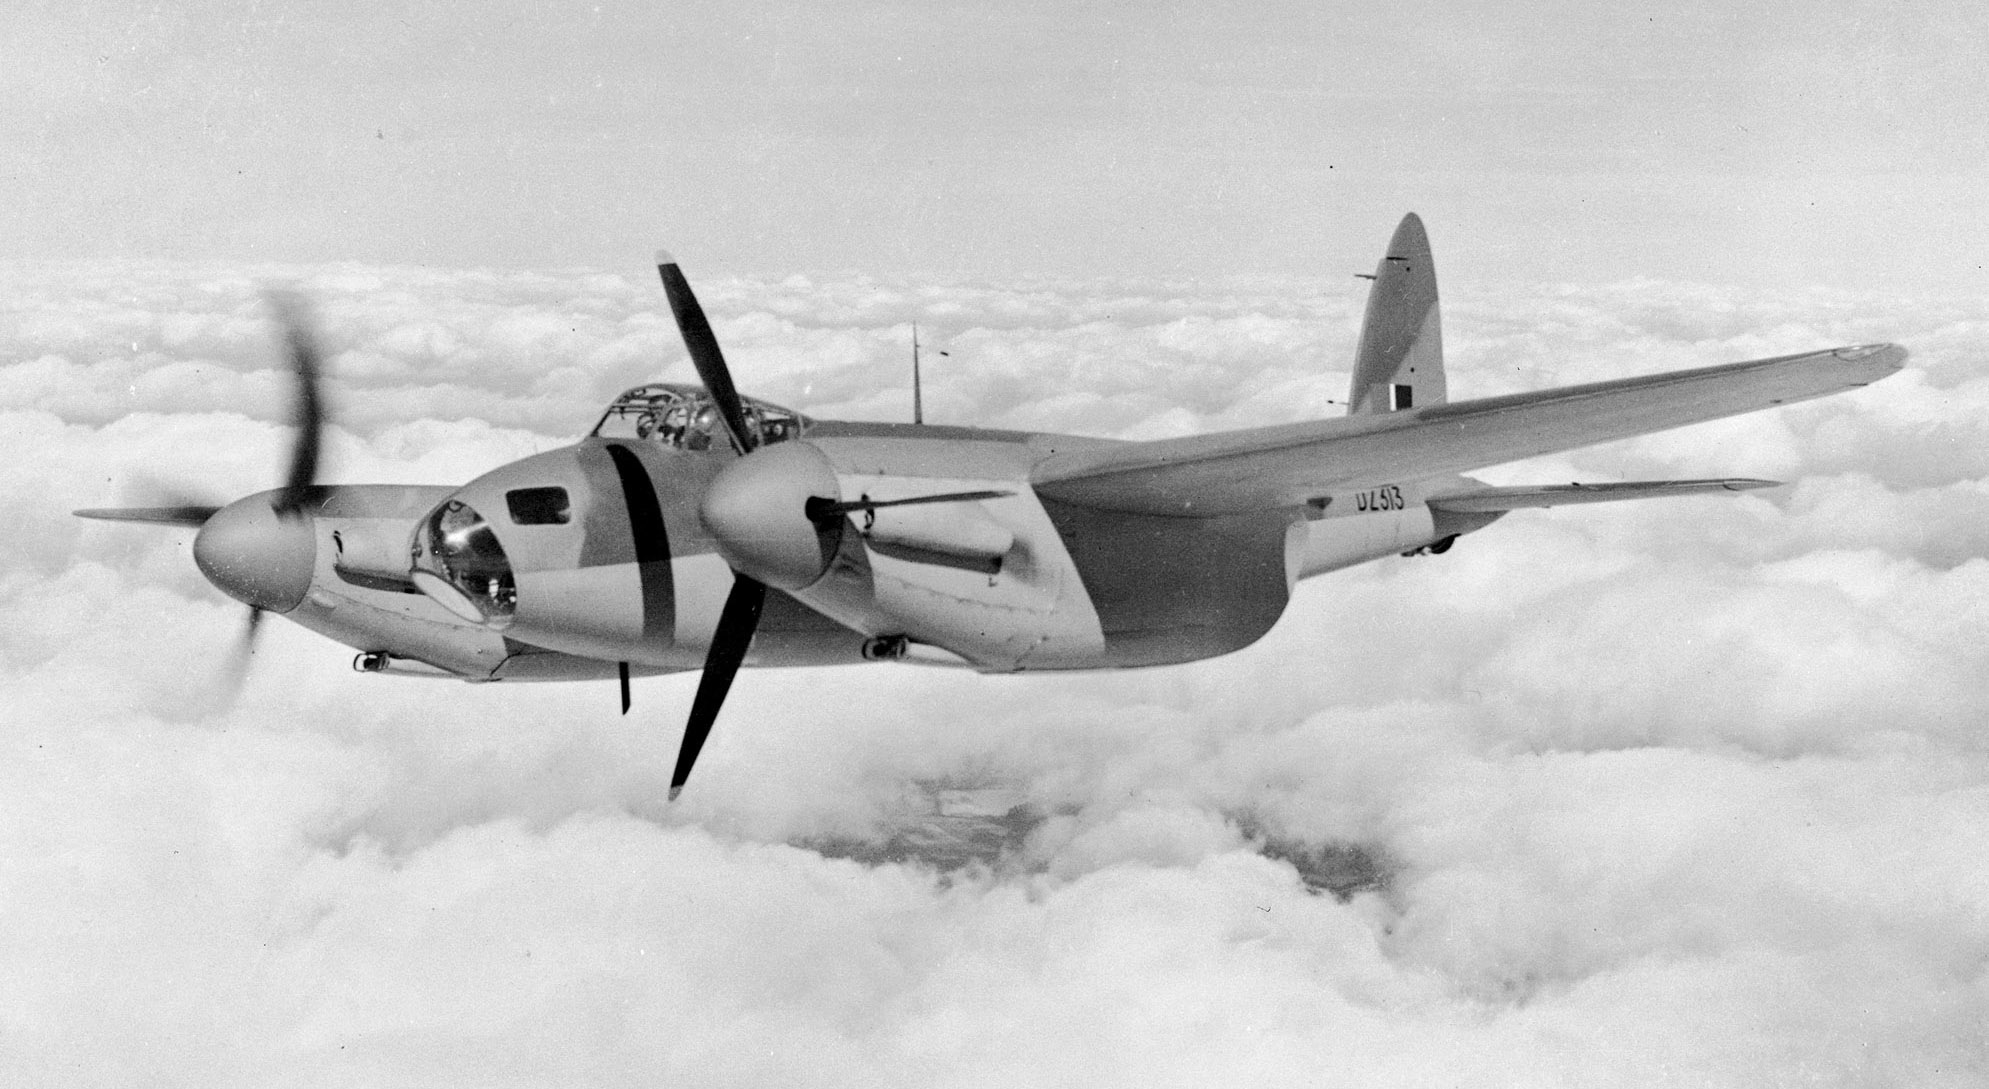 Le de Haviland Mosquito, un des avions de combat les plus remarquables de la Seconde Guerre mondiale, portait le surnom « Mossie ». Entièrement fait de bois, l’appareil devait d’abord servir en tant que bombardier léger, mais sa grande polyvalence a vite donné lieu à des variantes de reconnaissance, de chasse et de bombardement, de chasse nocturne et de harcèlement. En tout, de Havilland a construit 1 134 Mosquito avant la fin de la guerre, dont 44 ont fait partie de l’ARC du 1er juin 1943 au 28 septembre 1951. La photo ci-dessus, prise le 25 janvier 1943, montre un Mosquito B Mk 25 en vol. PHOTO : Archives du MDN, PL-14571